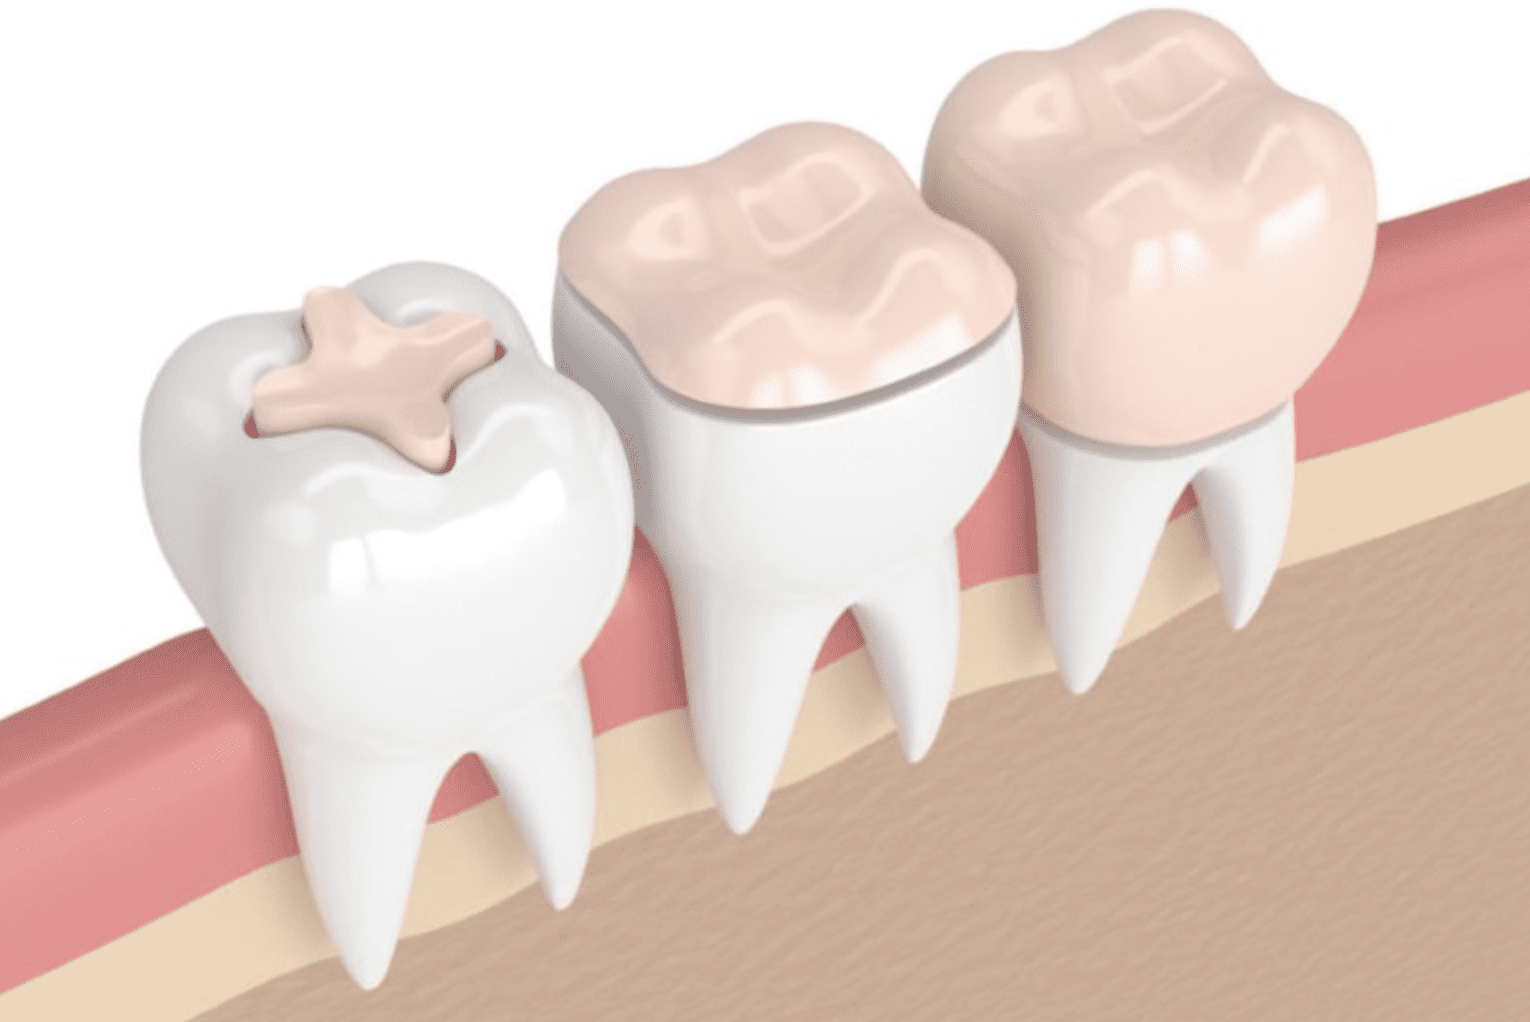 Le pansement dentaire, pour une dentition saine et soignée